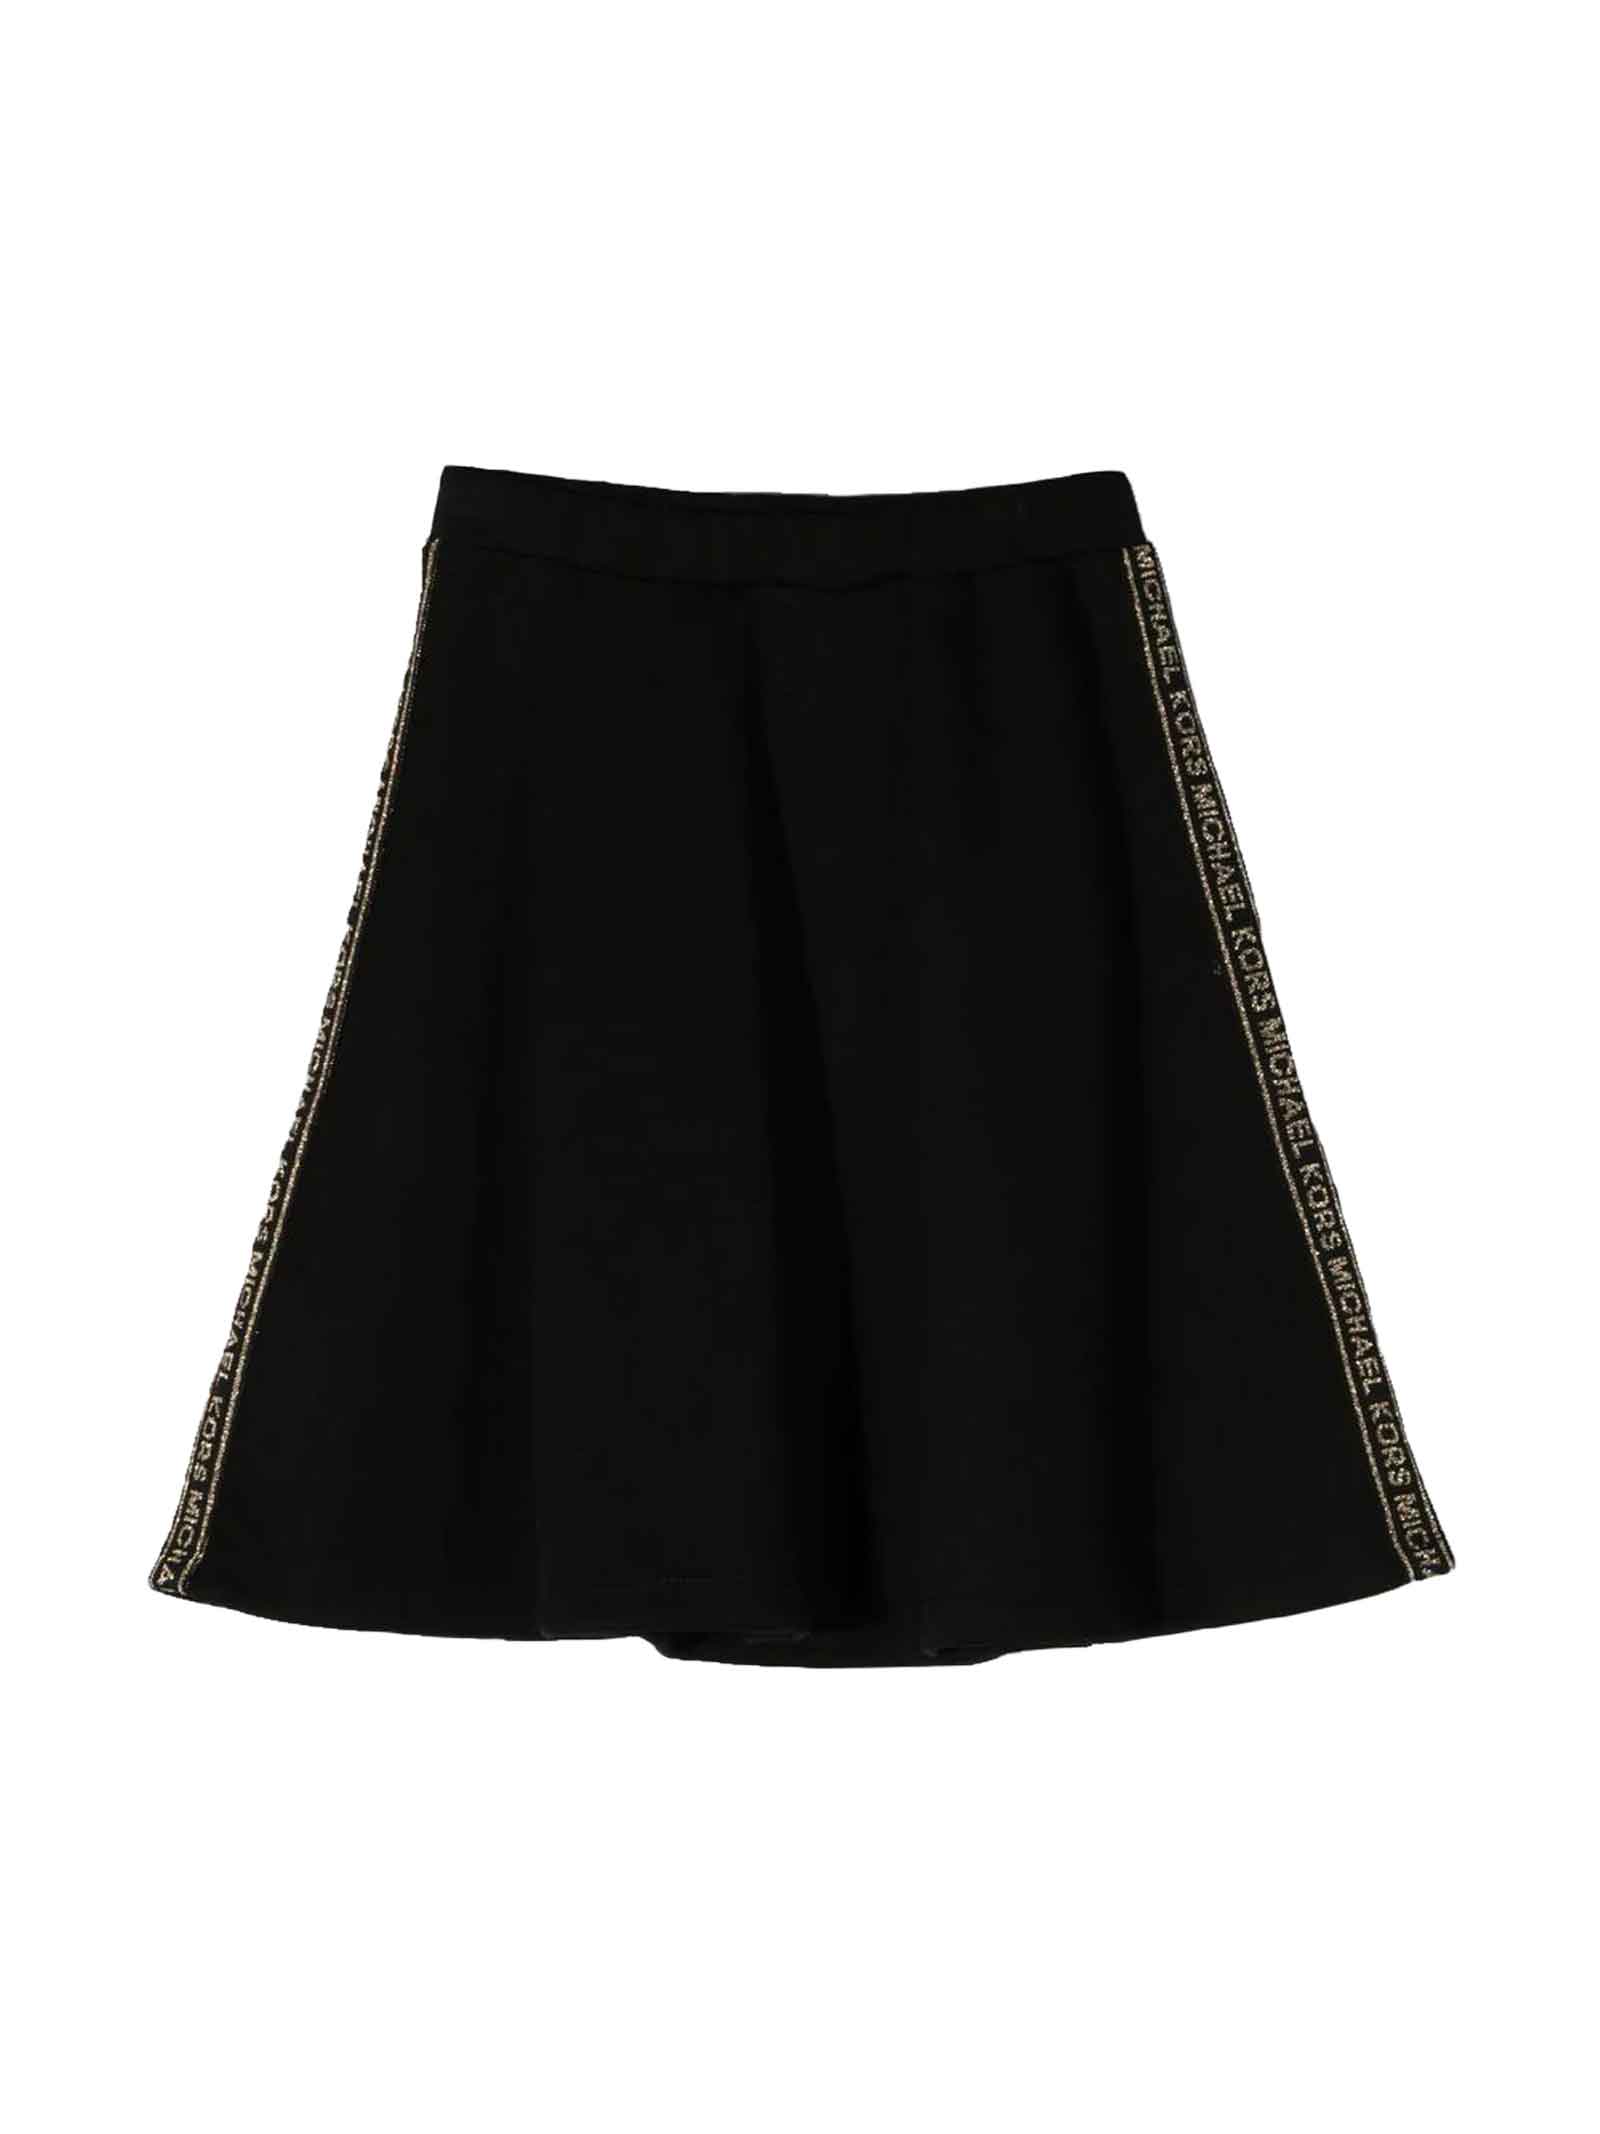 Michael Kors Black Skirt Girl